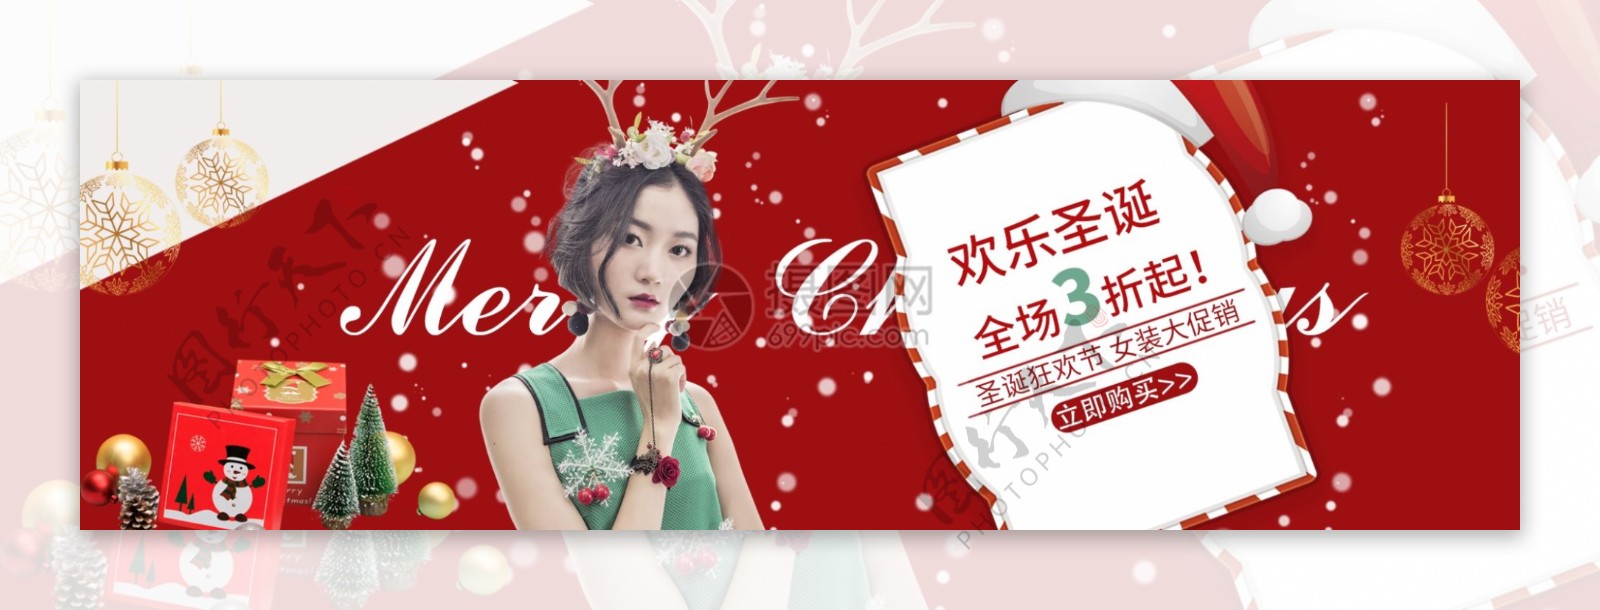 红色欢乐圣诞女装促销淘宝banner